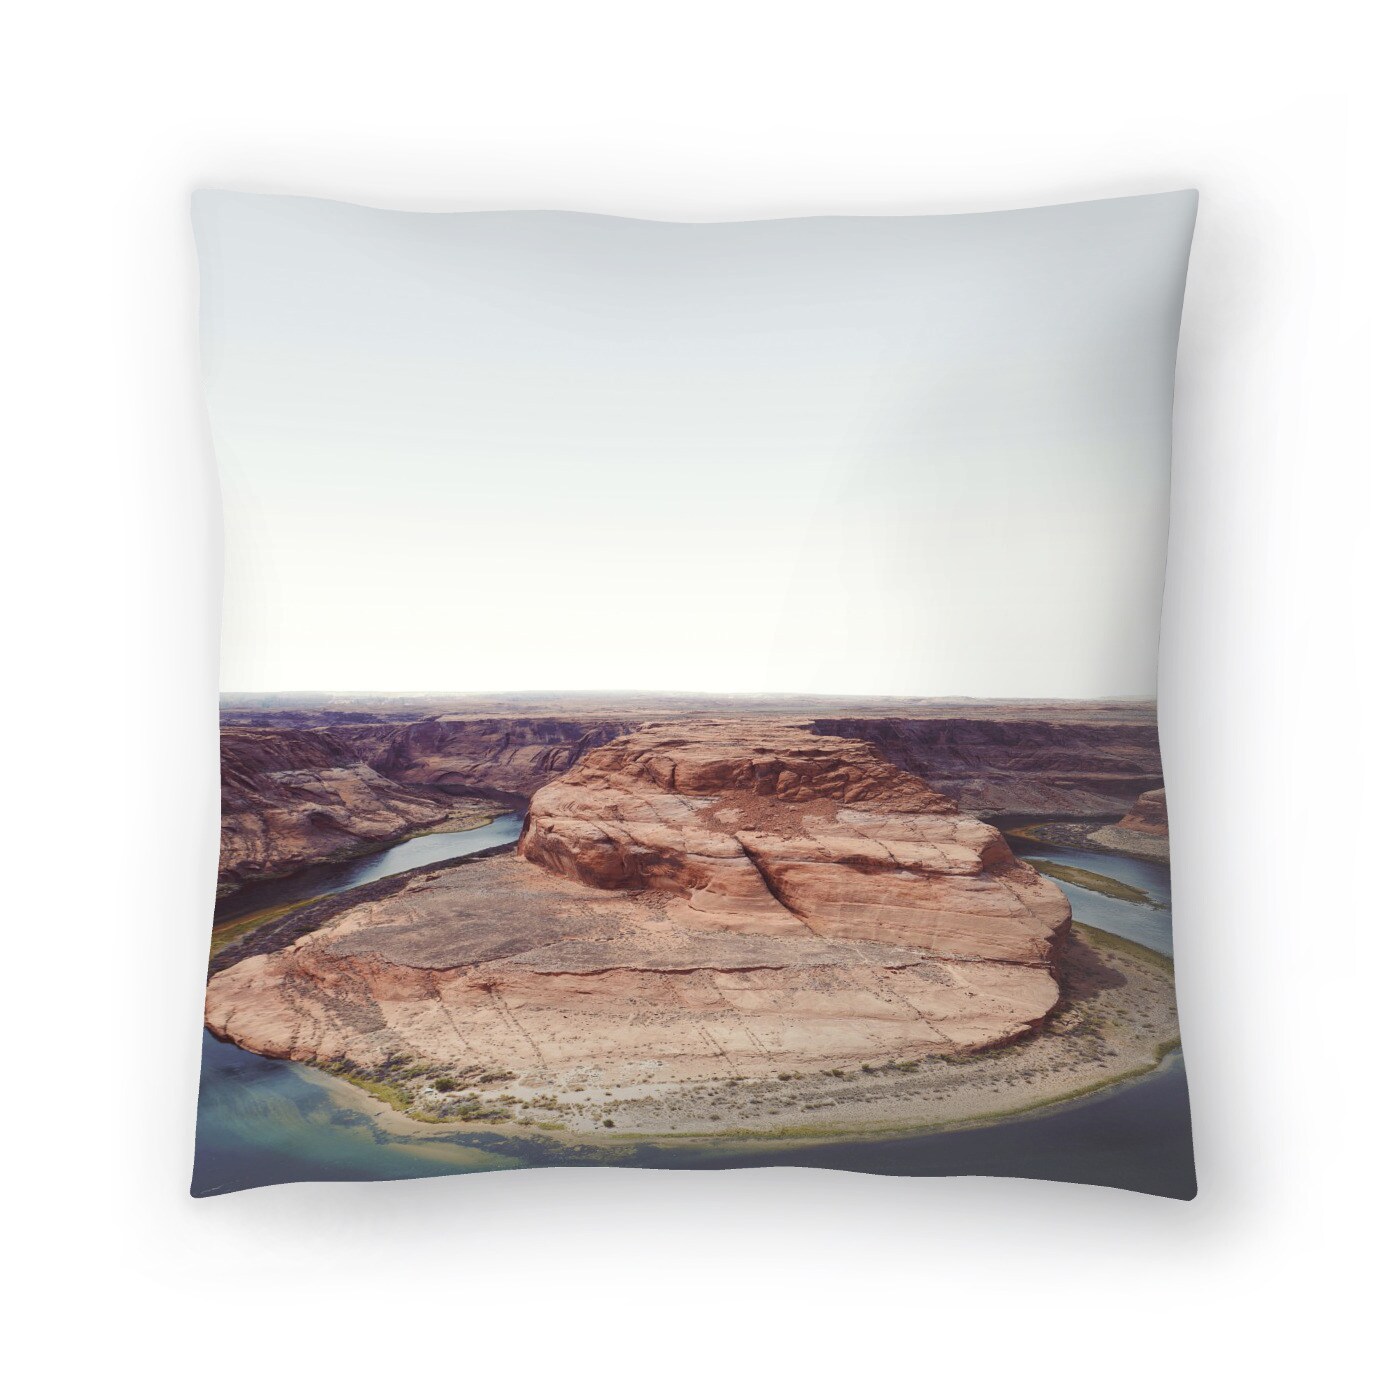 Bedrock Decorative Pillow